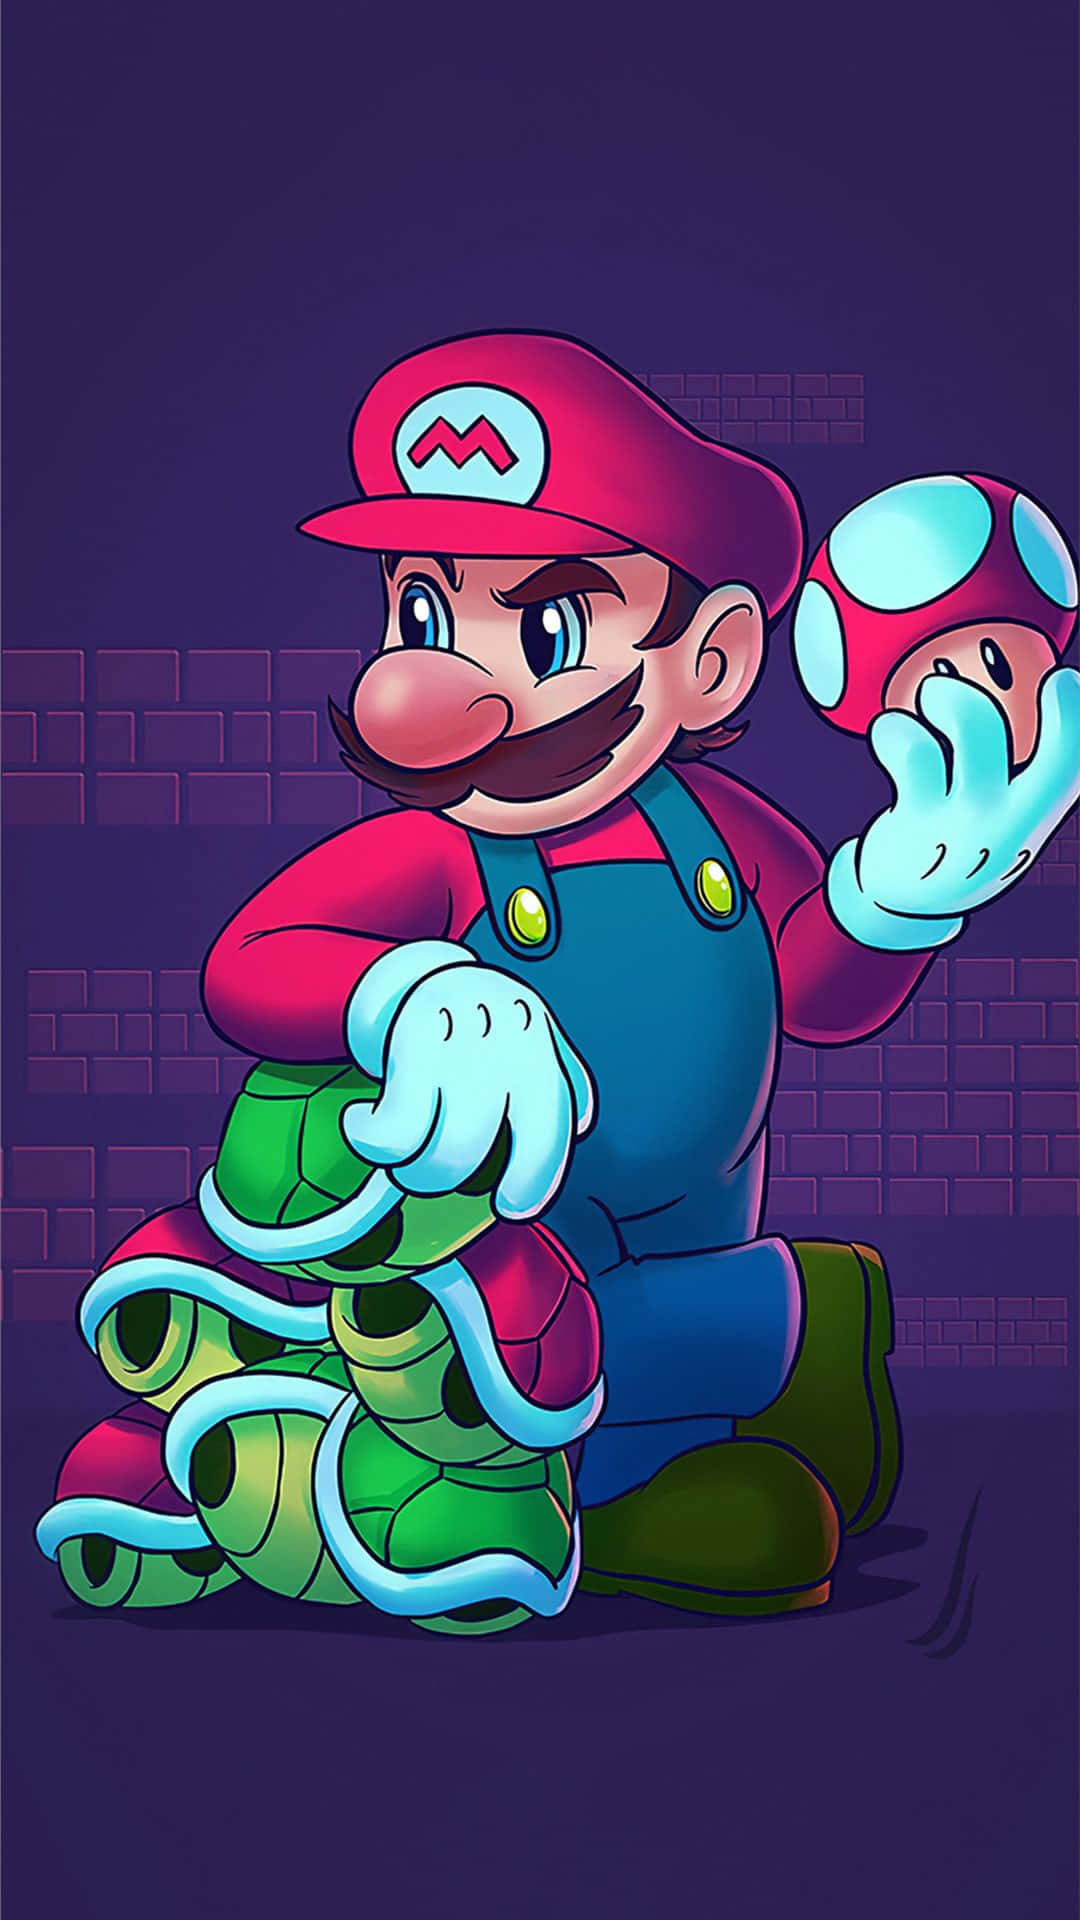 Luigi's rival, Mario - den ikoniske videospilfigur, som optræder i farverig moderne kunst - pryder denne tapet.